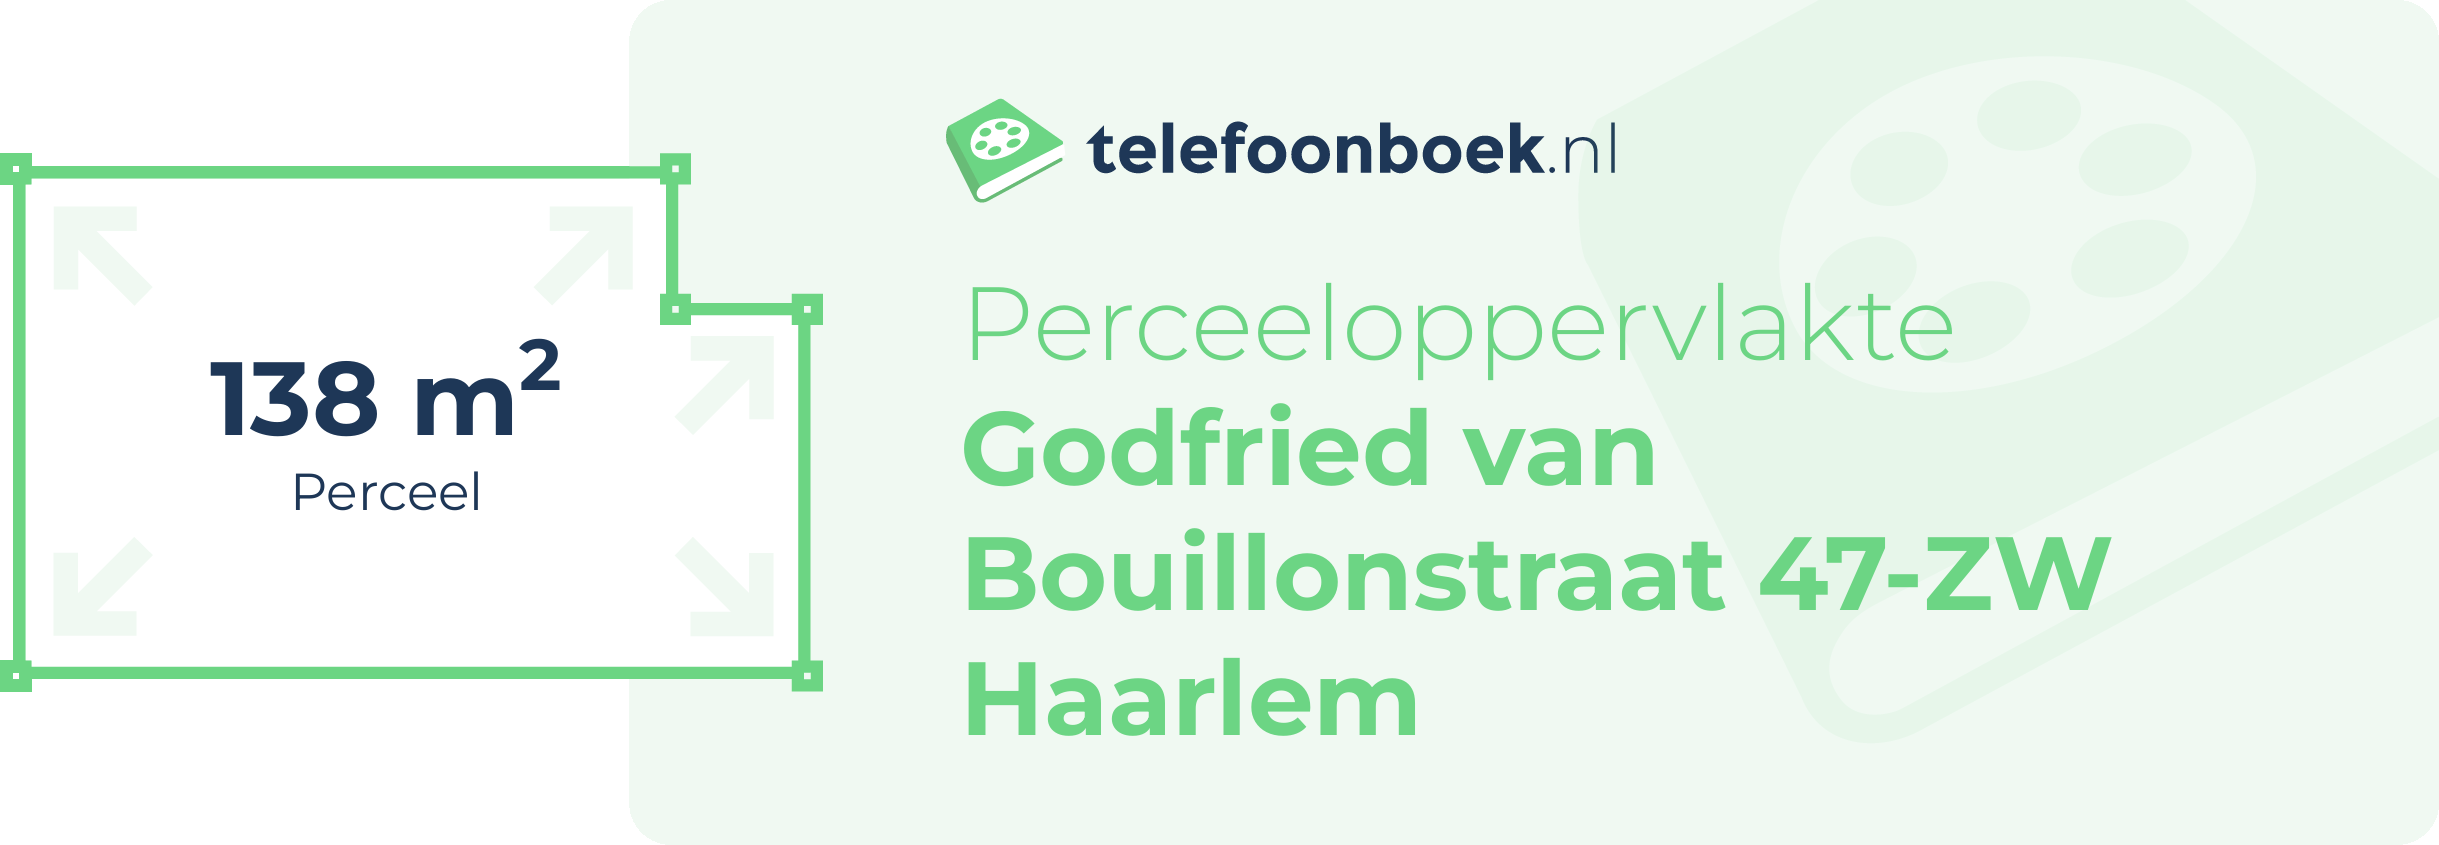 Perceeloppervlakte Godfried Van Bouillonstraat 47-ZW Haarlem